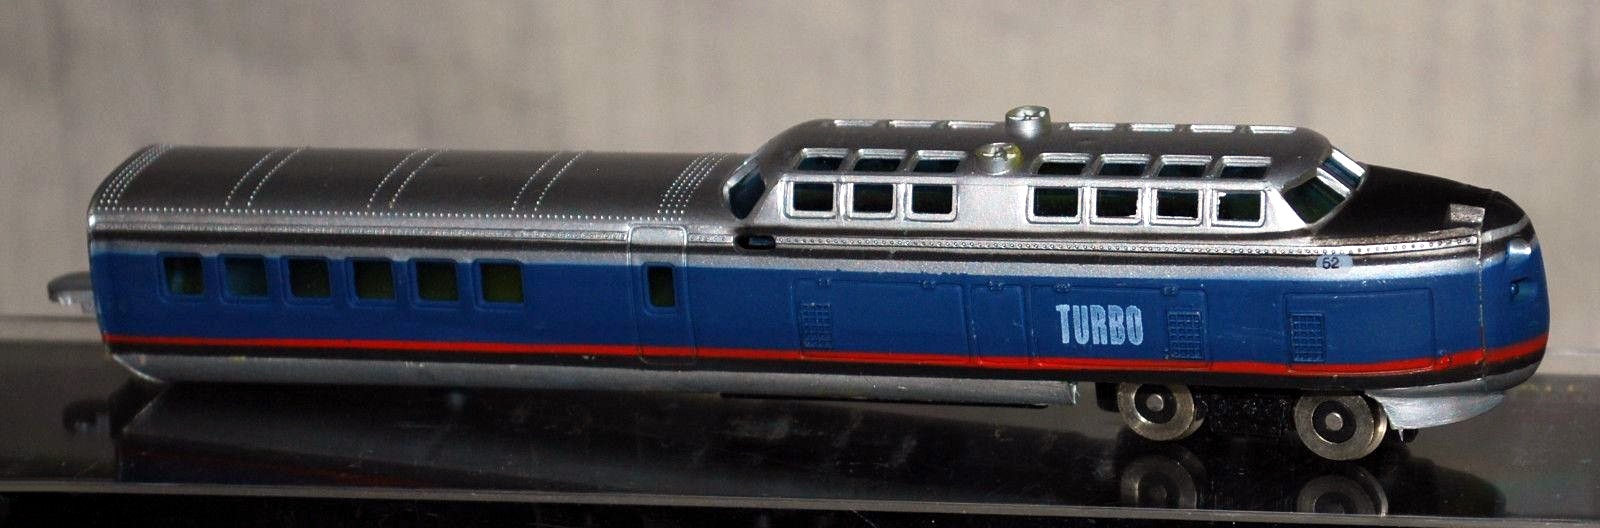 N Scale - Bachmann - 4740 - Passenger Train, TurboTrain - Penn Central - 52